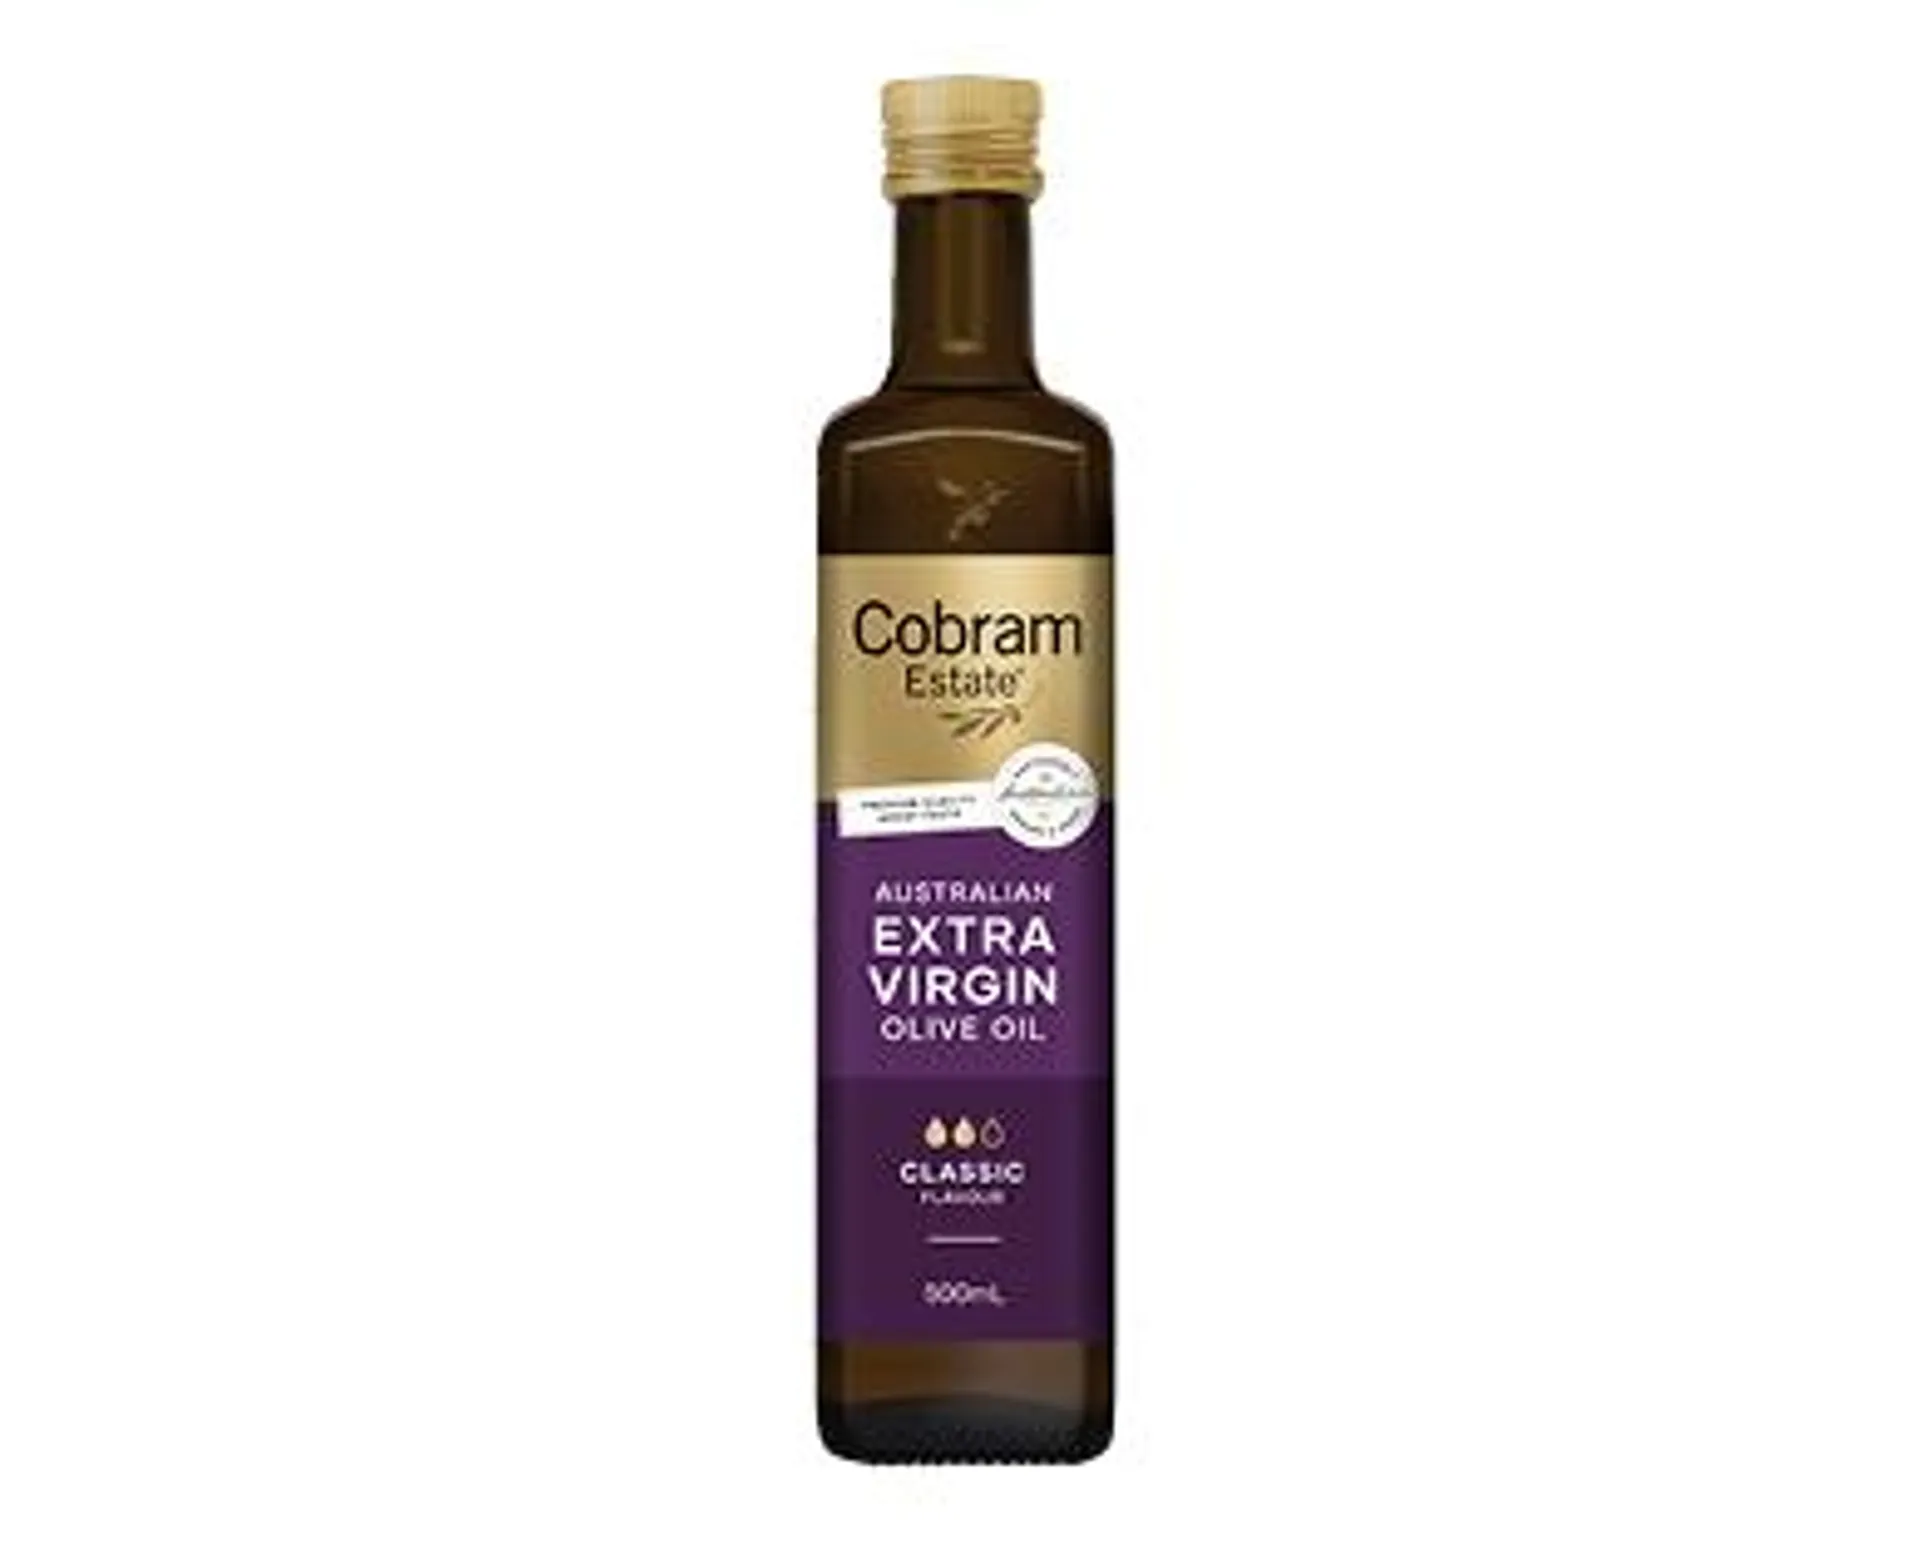 Cobram Estate Australia Extra Virgin Olive Oil 500ml